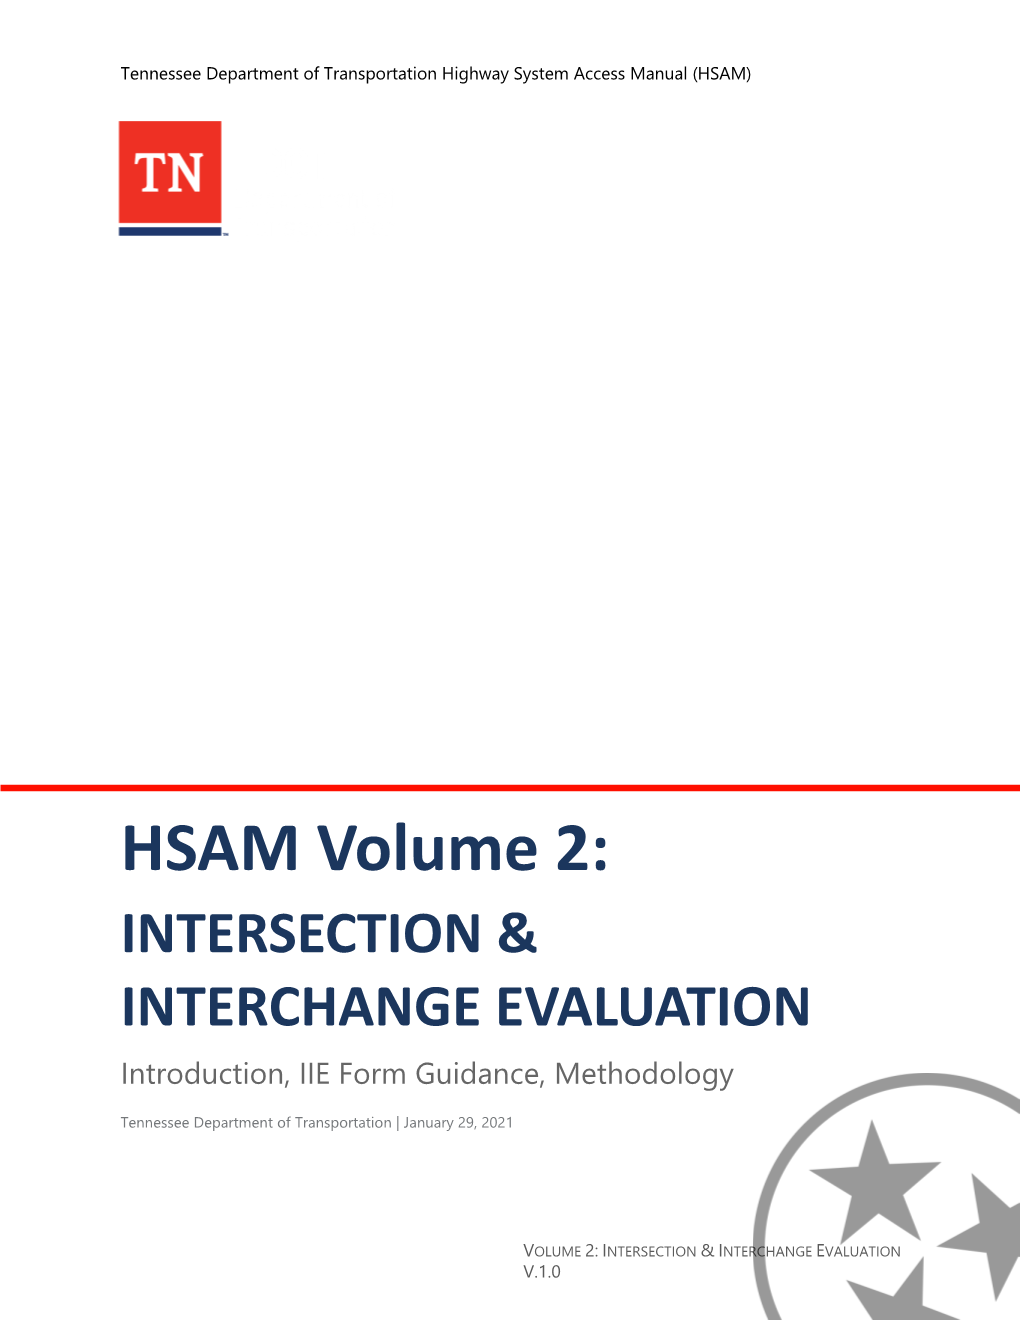 HSAM Volume 2: Intersection & Interchange Evaluation